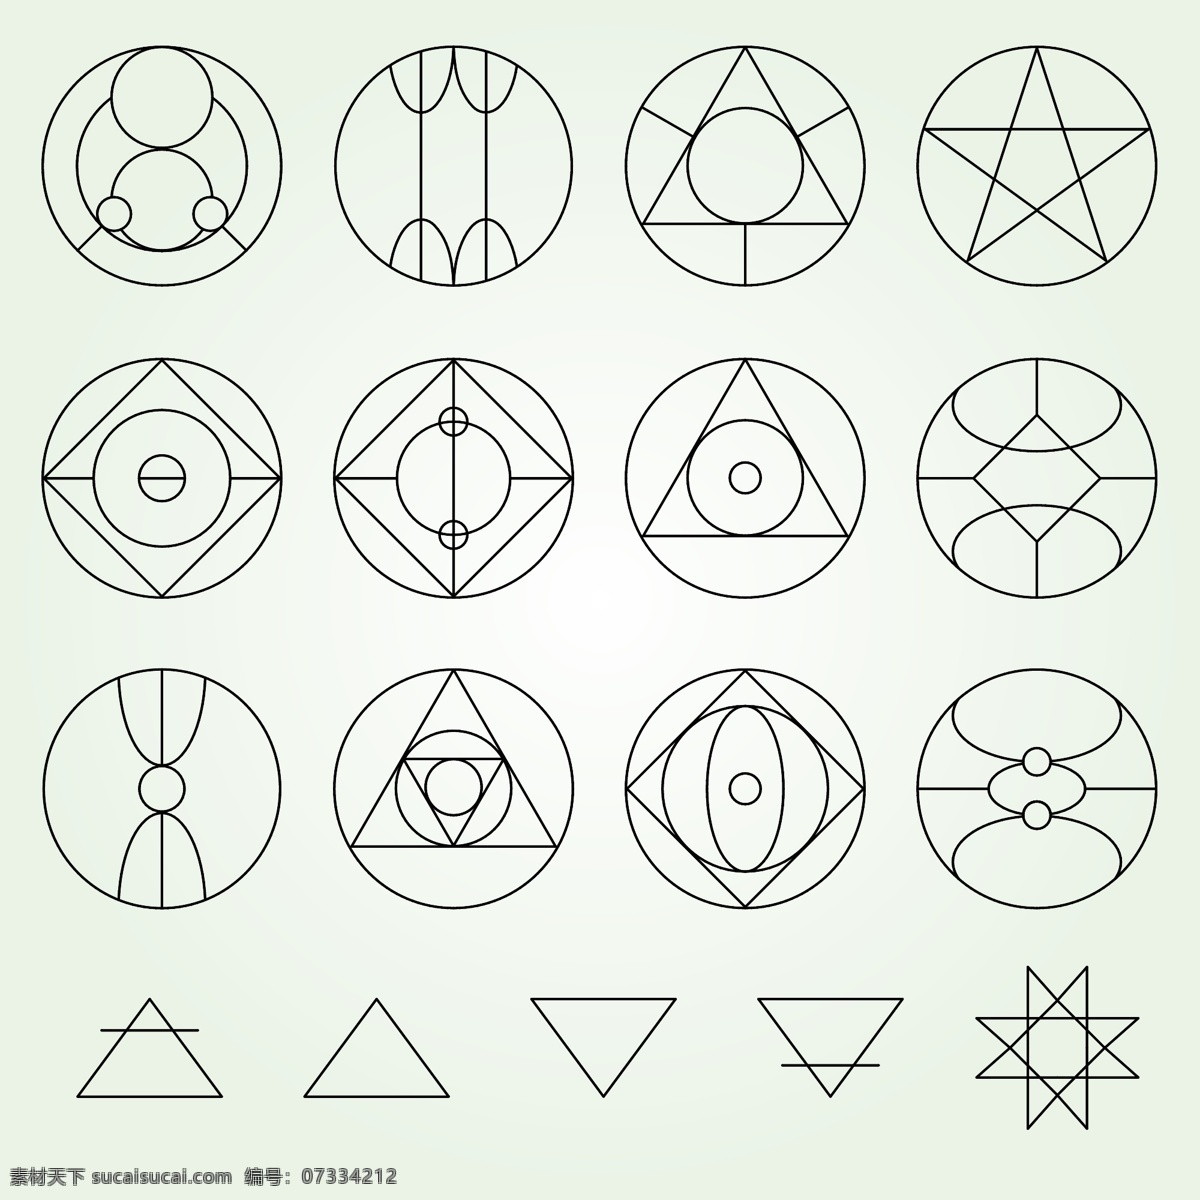 圆圈符号信仰 圆圈 符号 宗教 三角形 信仰 白色